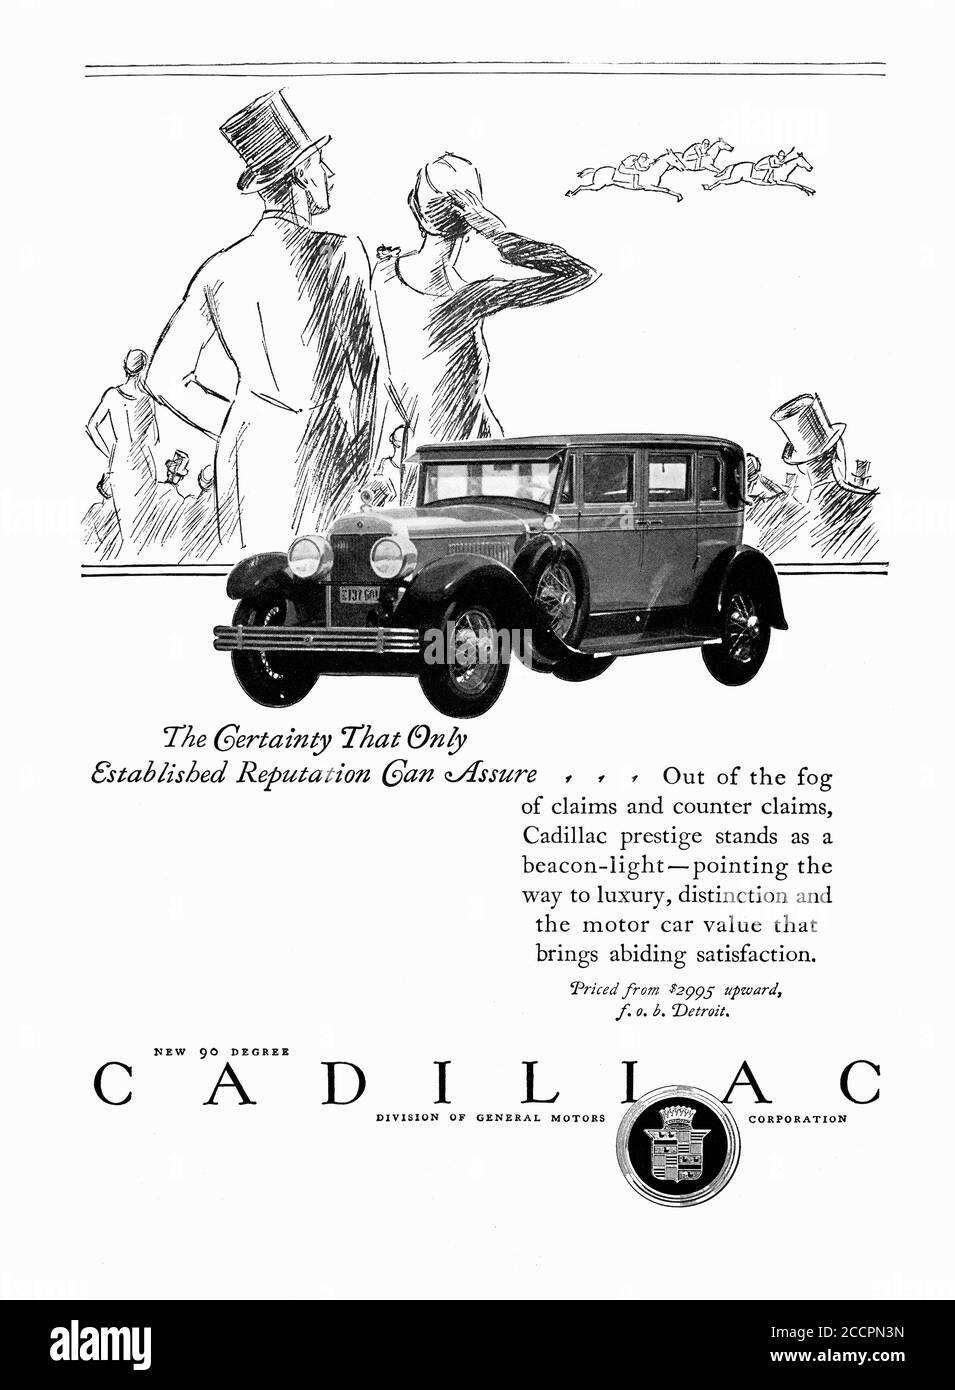 Publicité vers 1927, pour Cadillac, une division de General Motors Banque D'Images